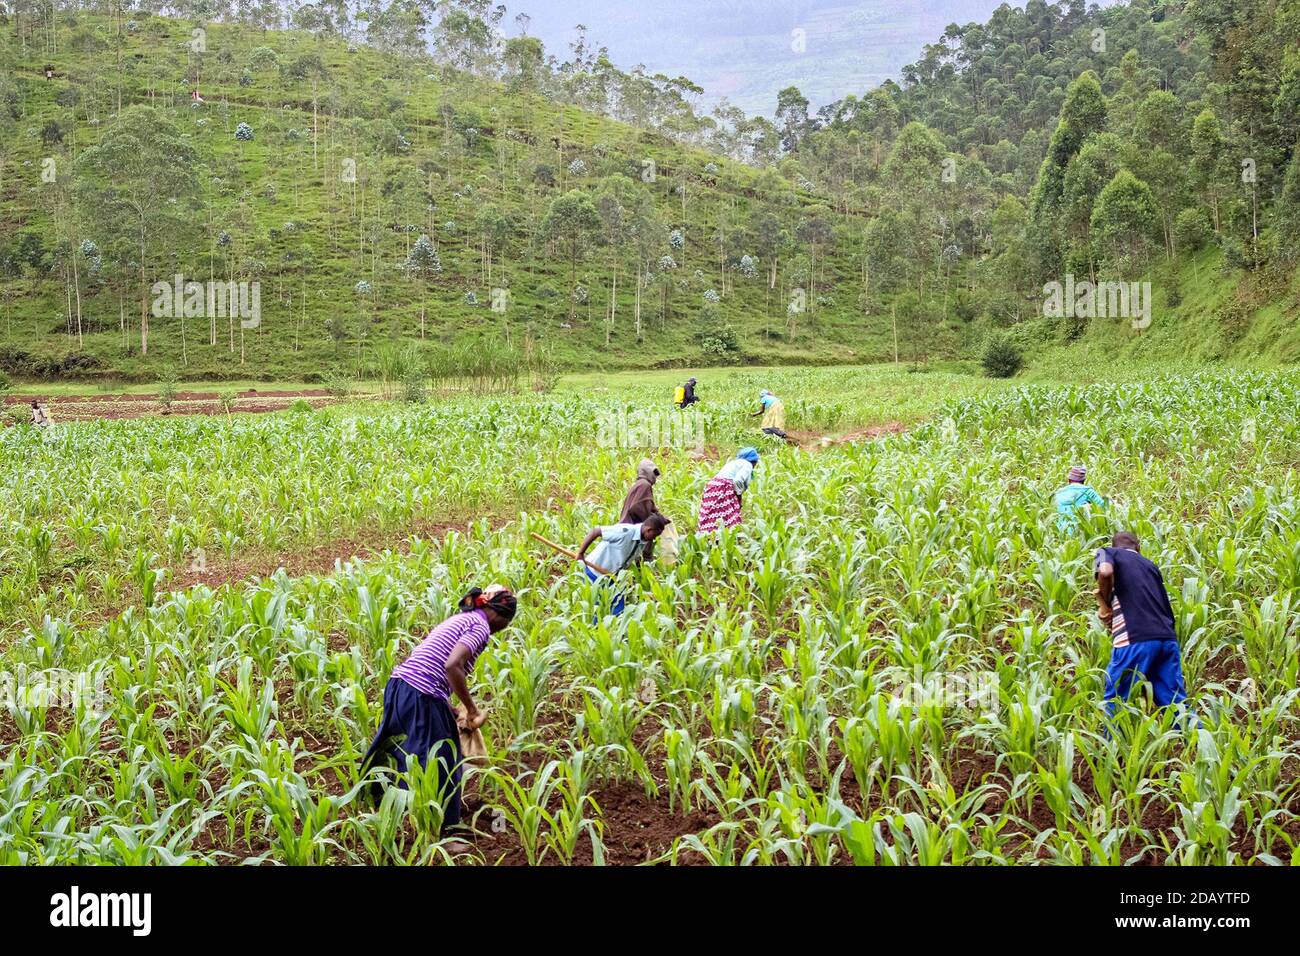 Farmers in rural Rwanda work in a field. Stock Photo